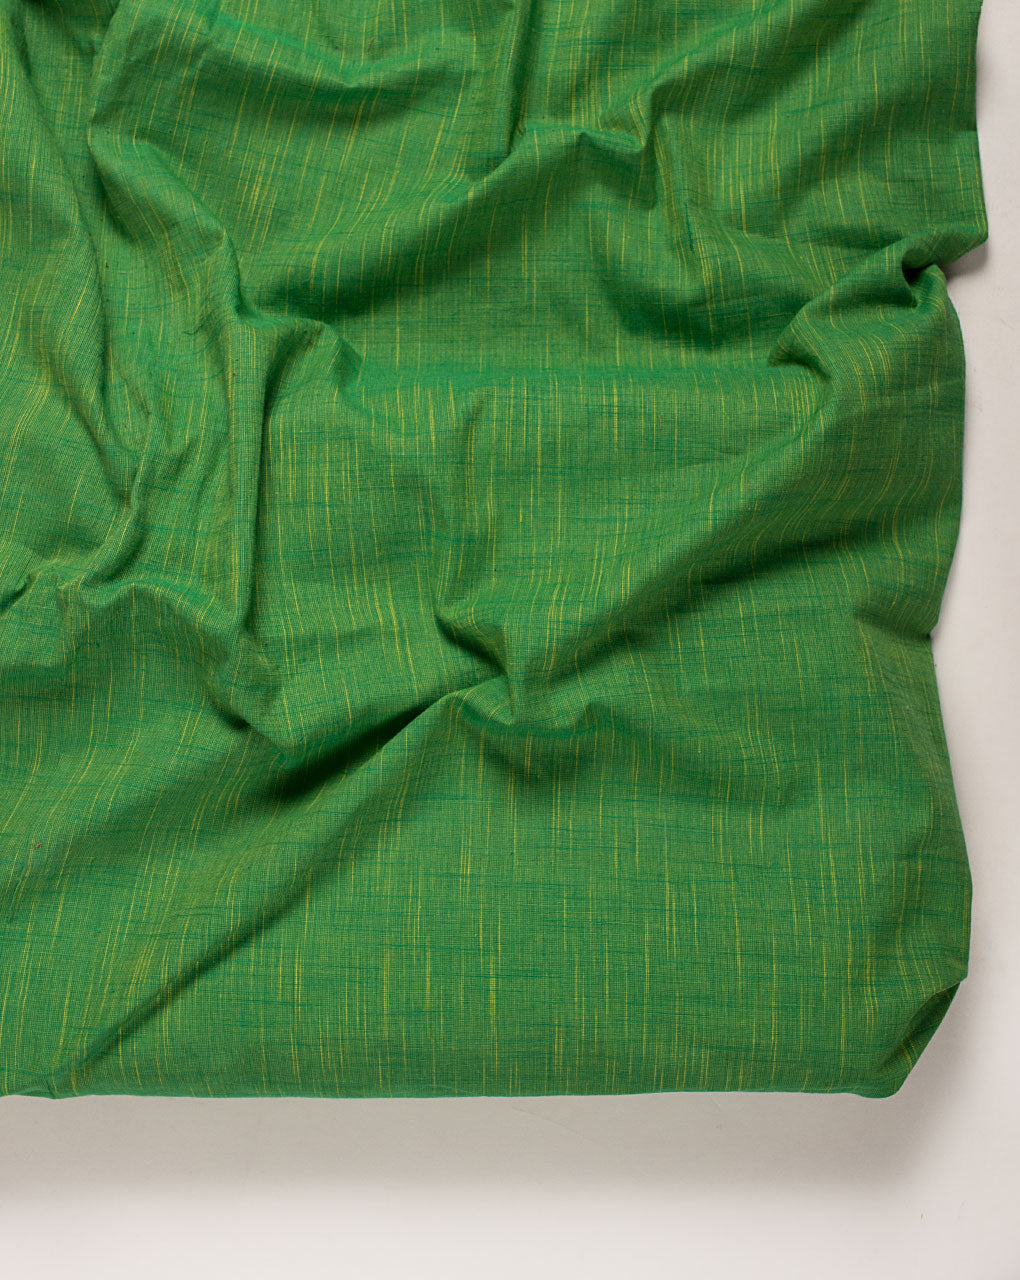 ( Pre Cut 1 MTR ) Green Plain Woven Loom Textured Cotton Fabric